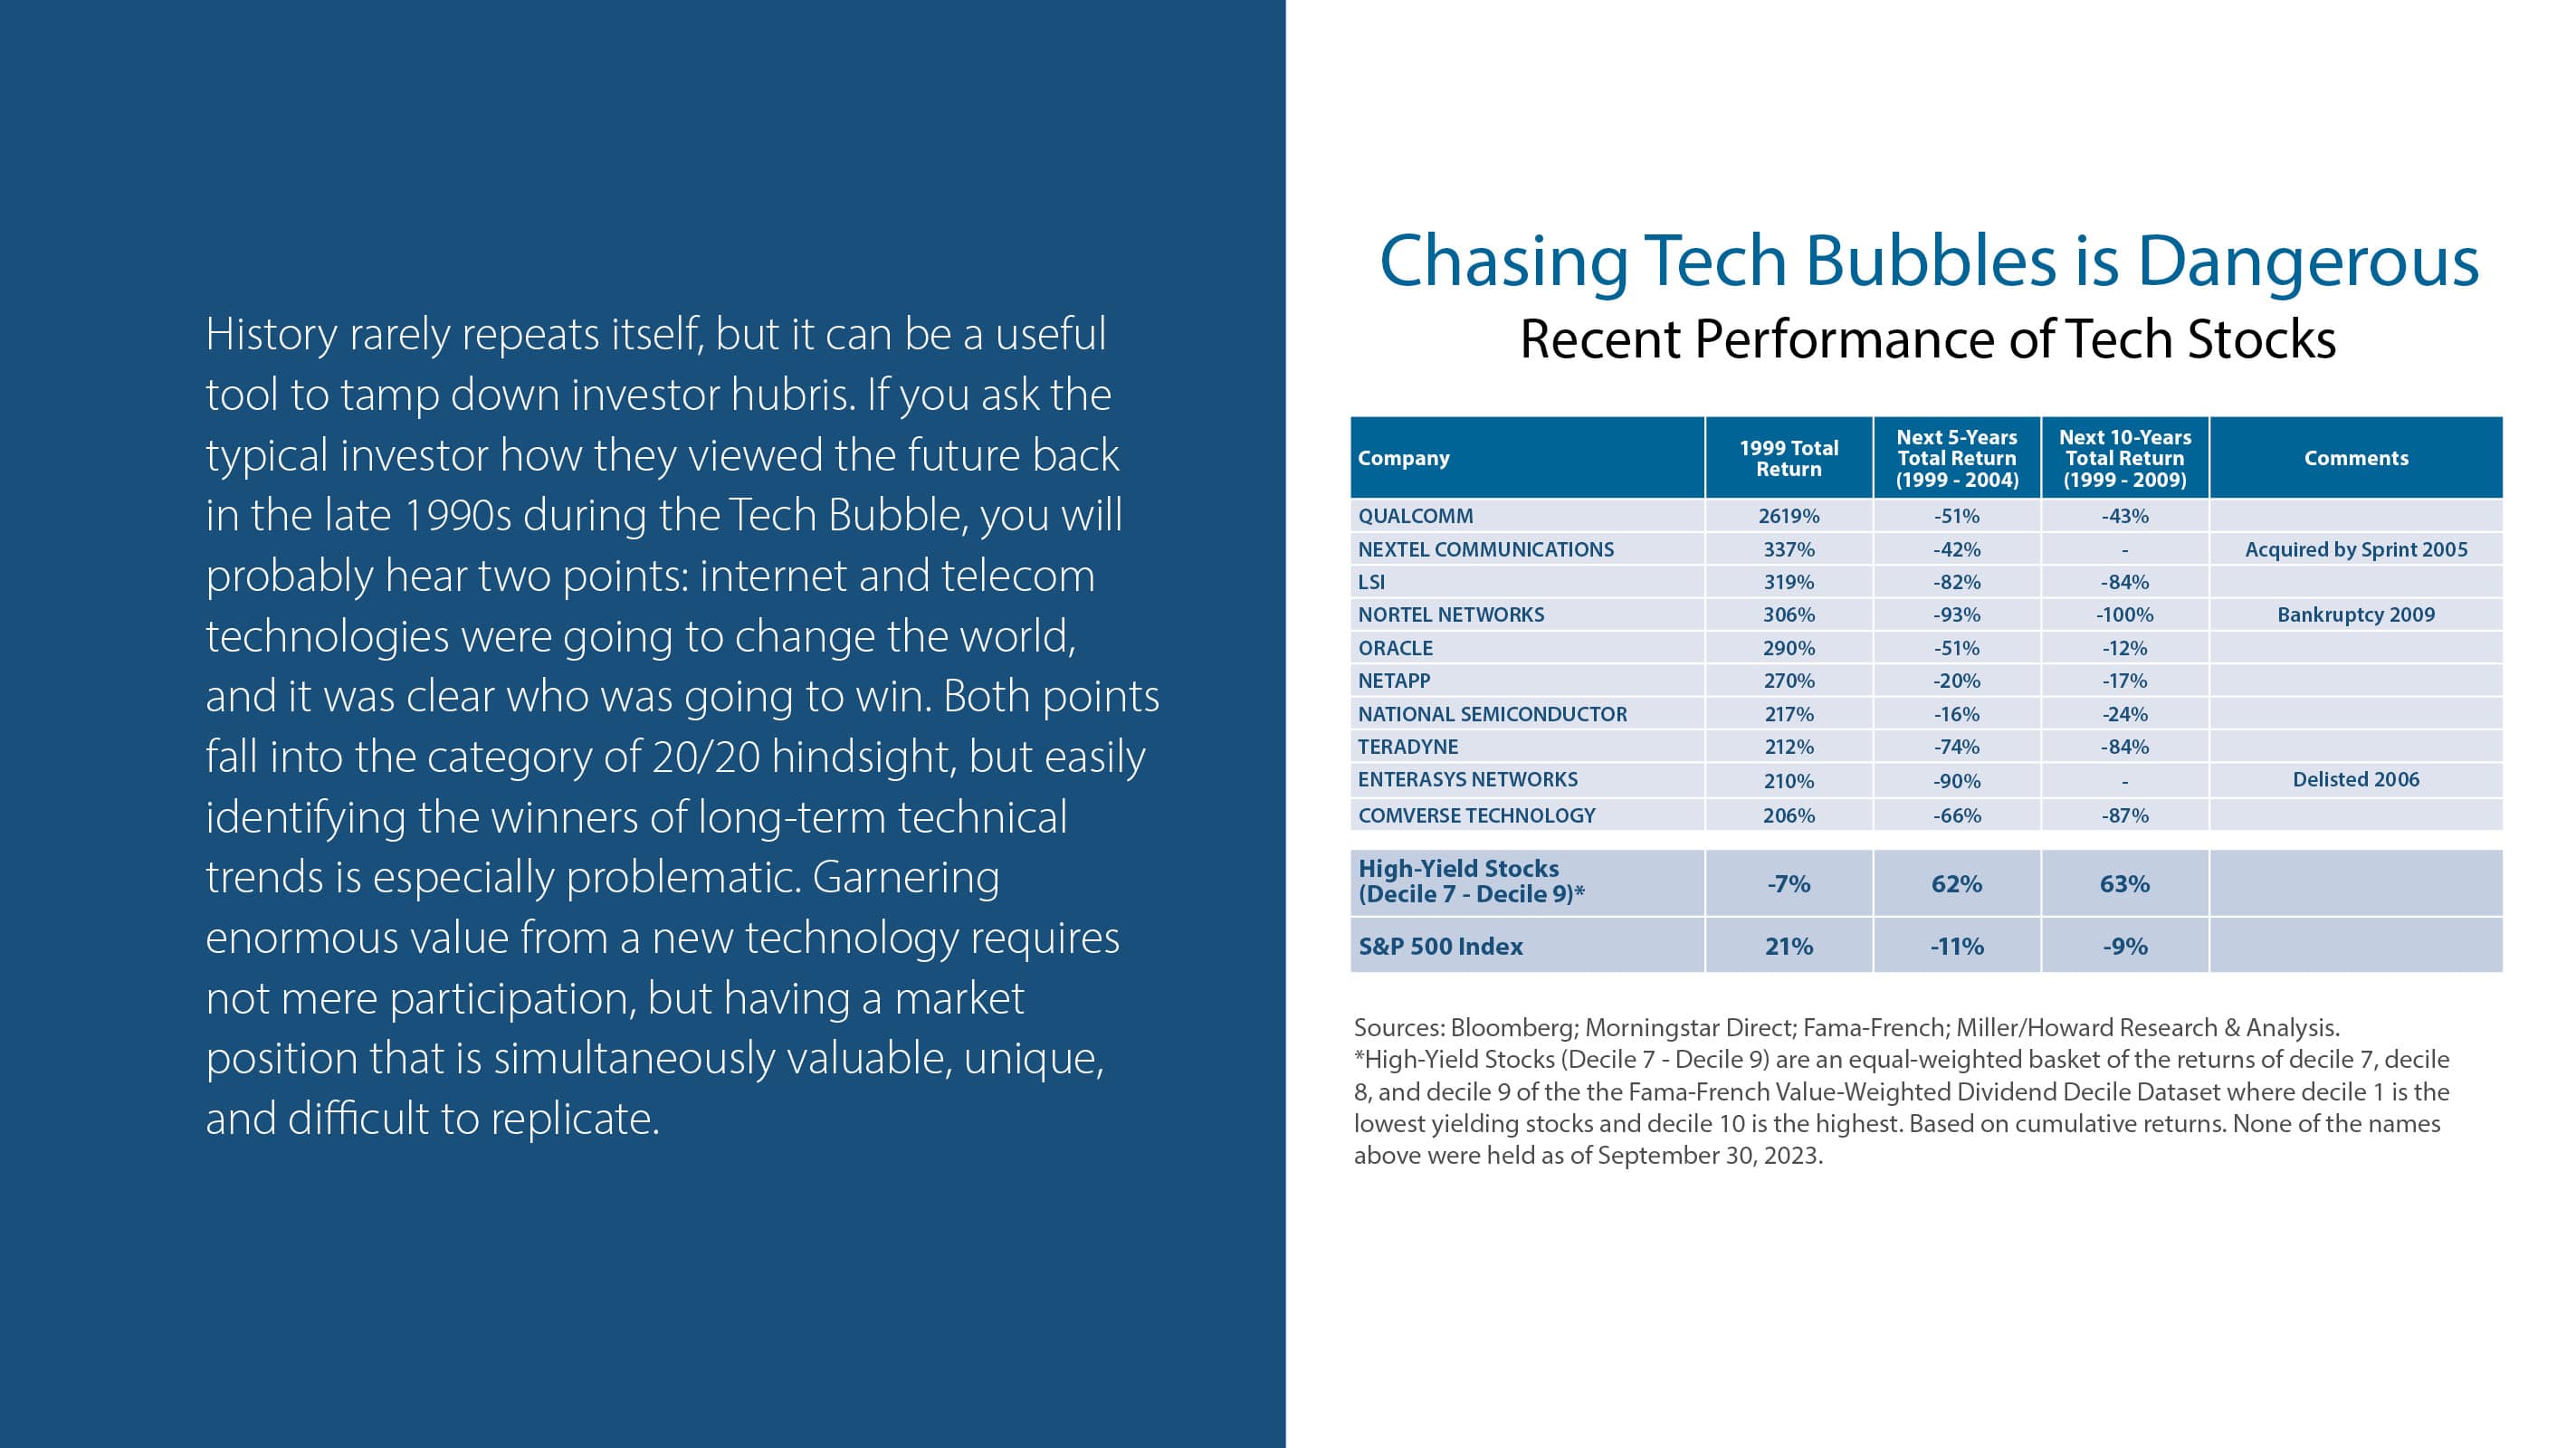 Chasing Tech Bubbles is Dangerous